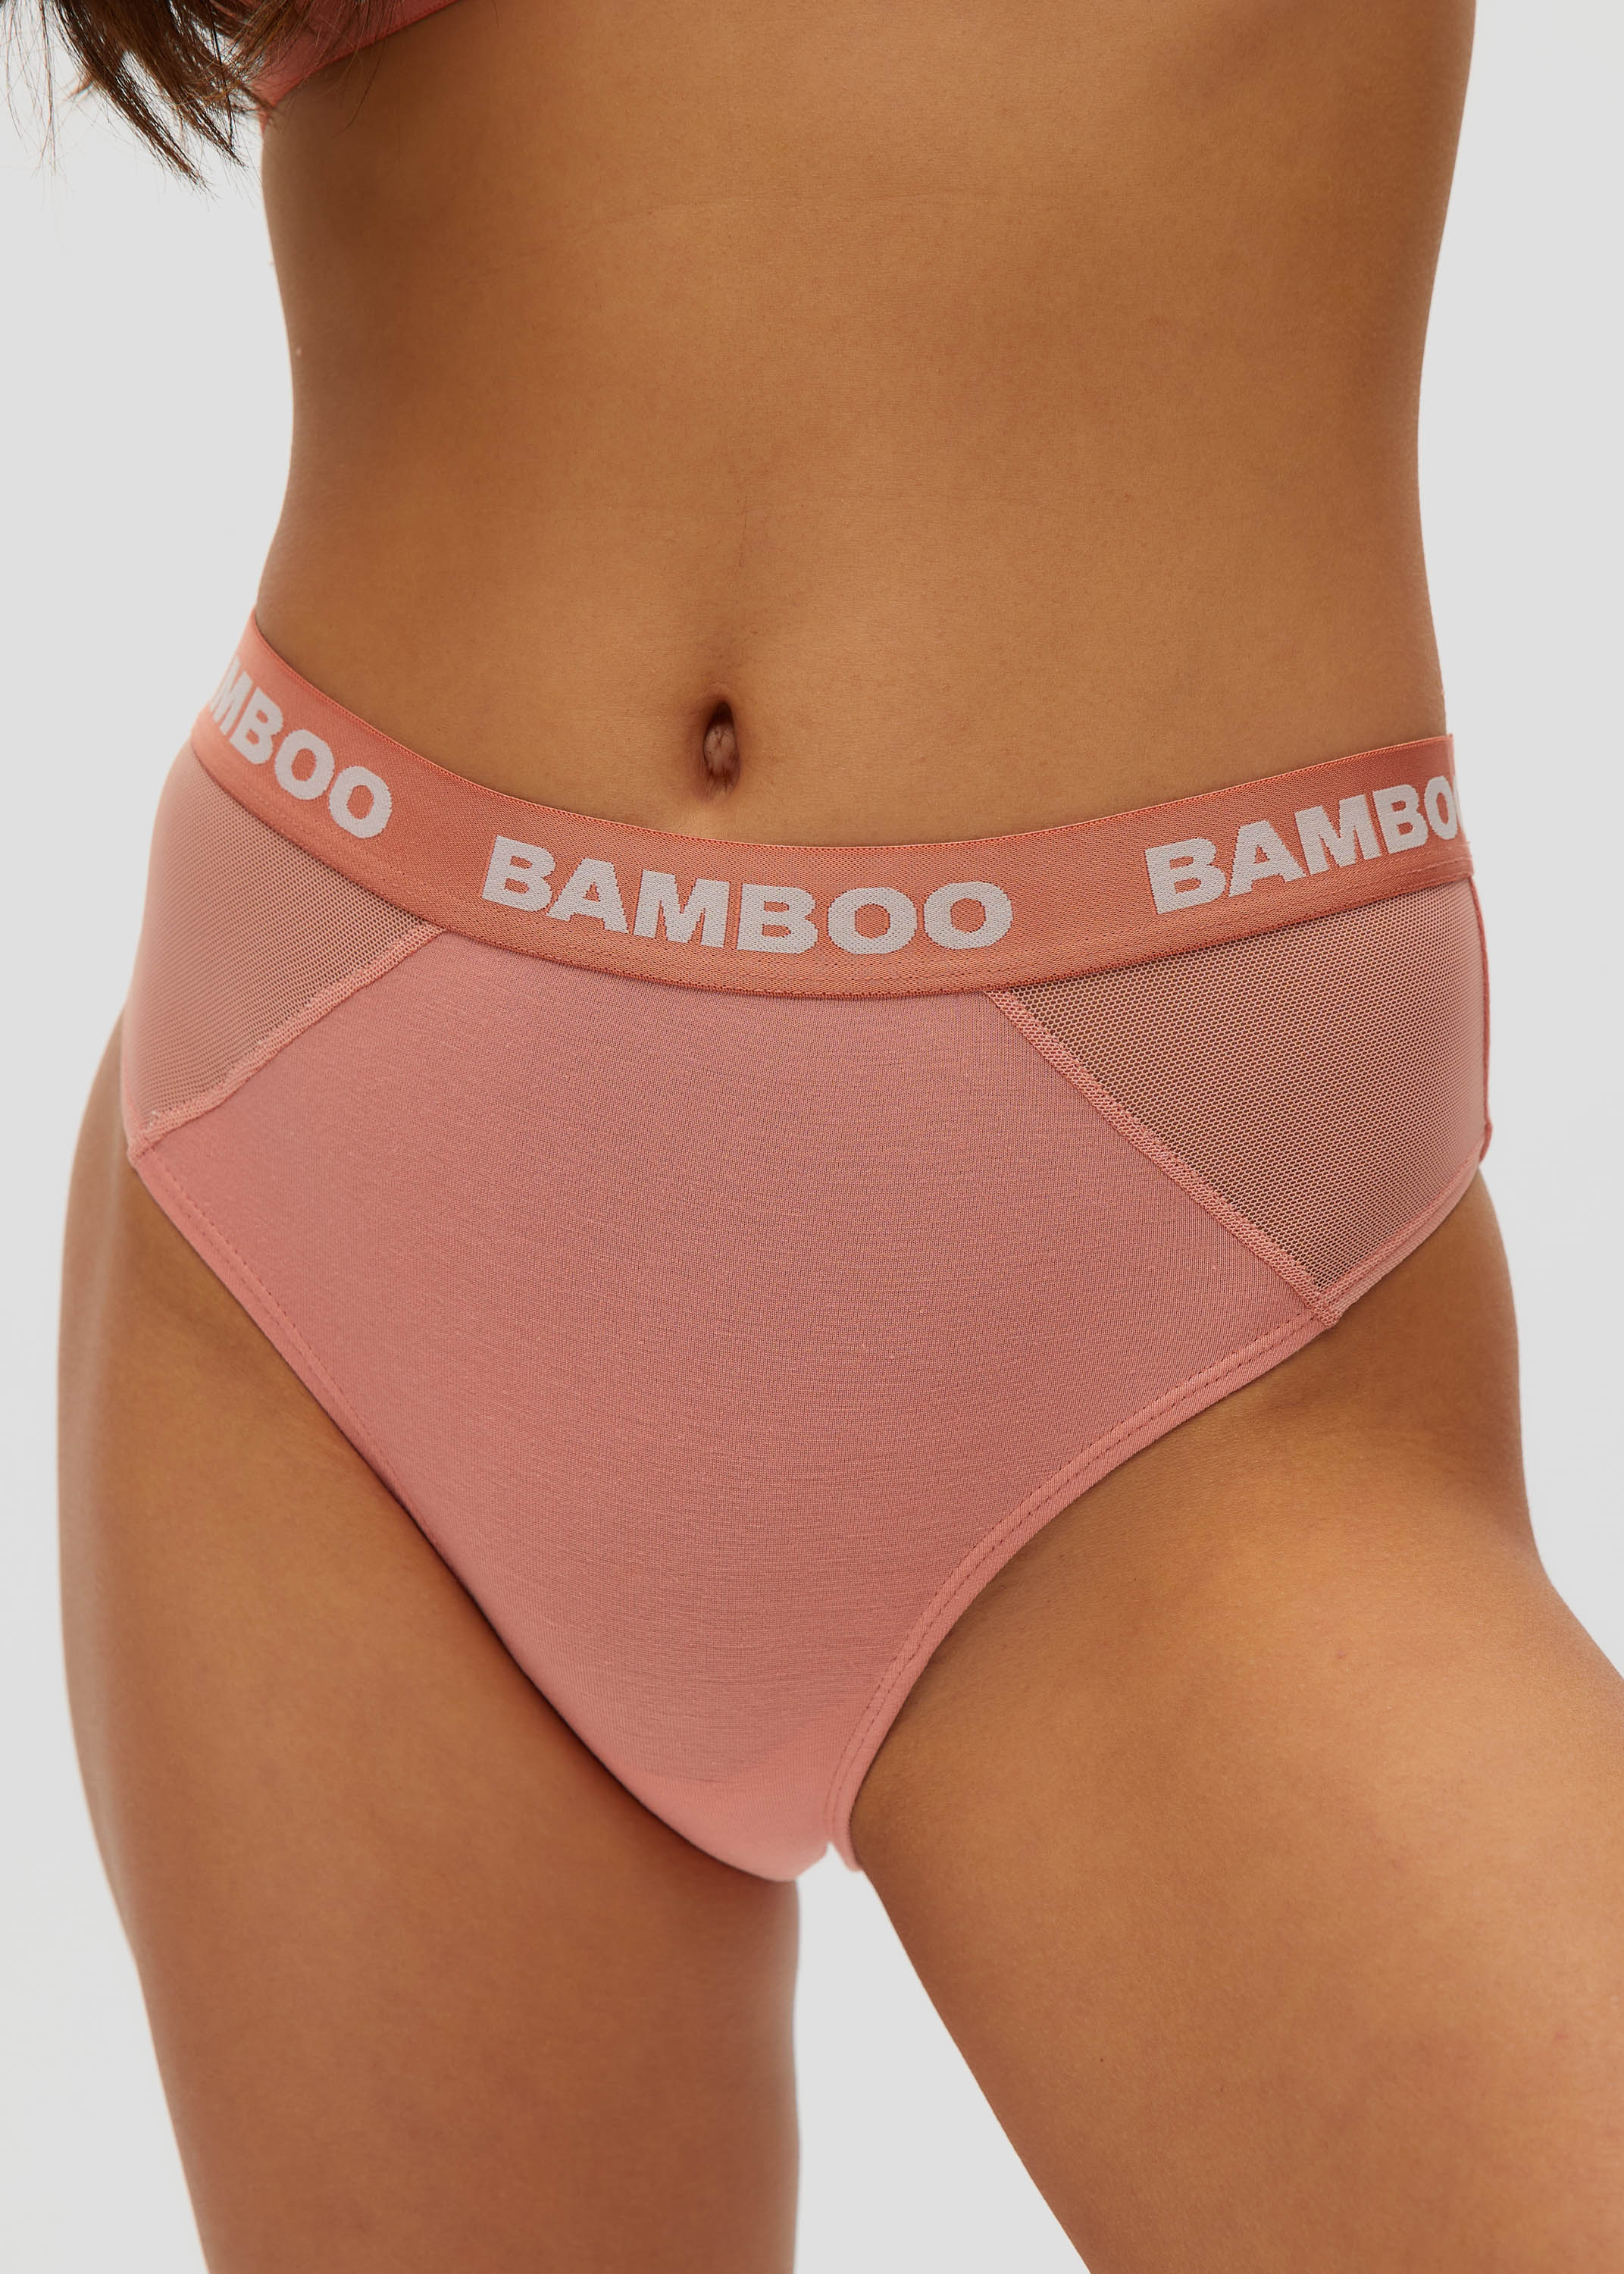 Mesh Insert Cheeky – Bamboo Underwear